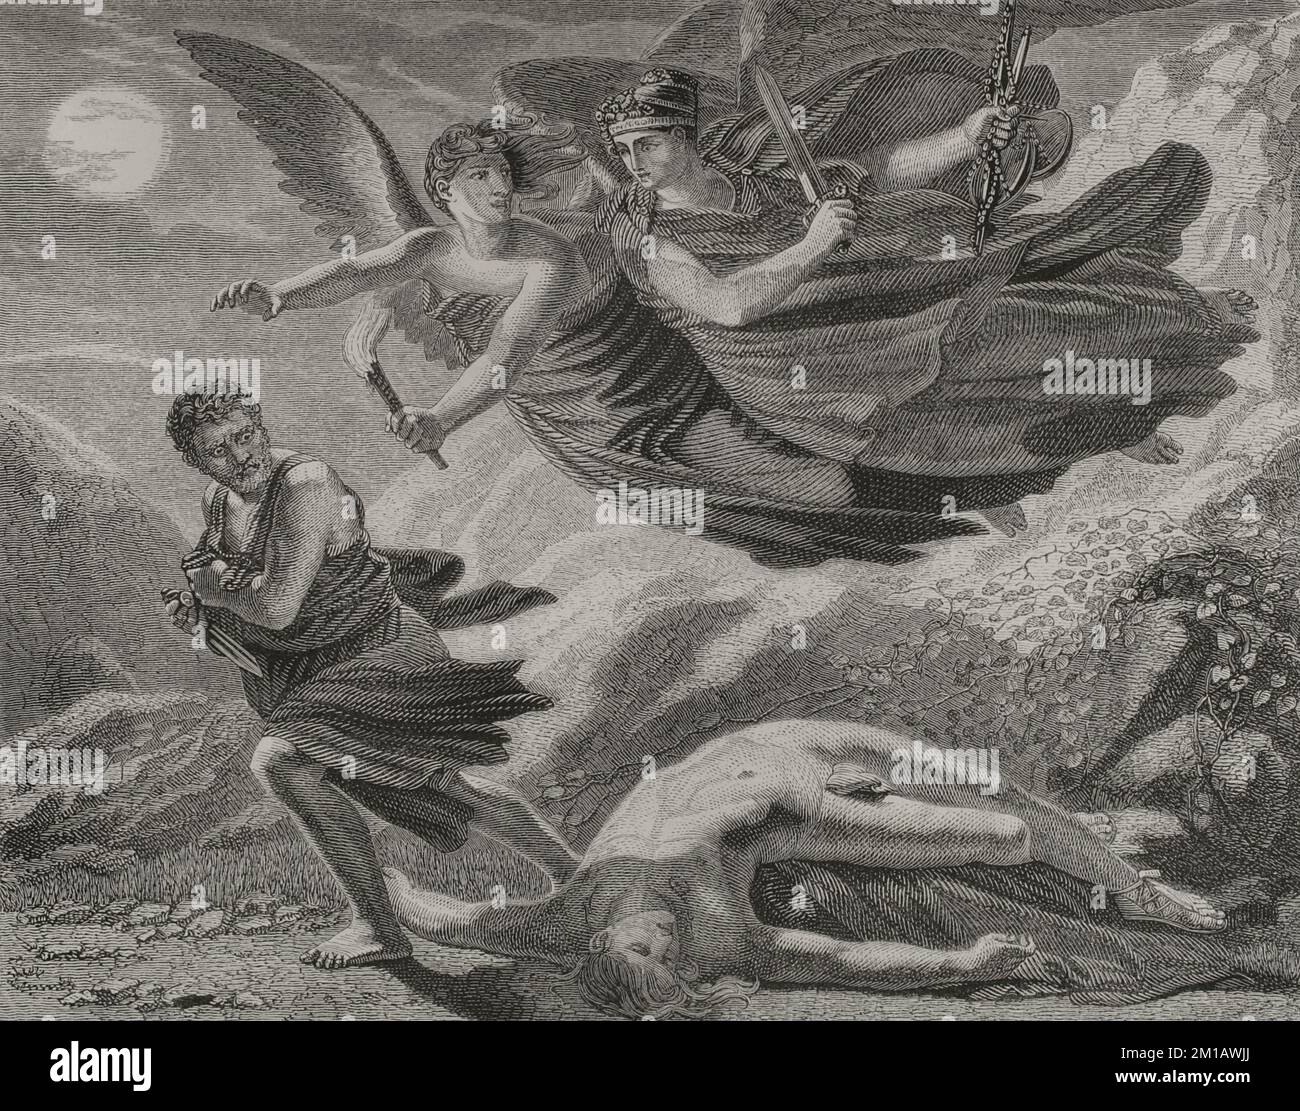 The Revenge and Justice chasing crime. Engraving by Trichon. 'Los Héroes y las Grandezas de la Tierra'. Volume I. 1854. Stock Photo